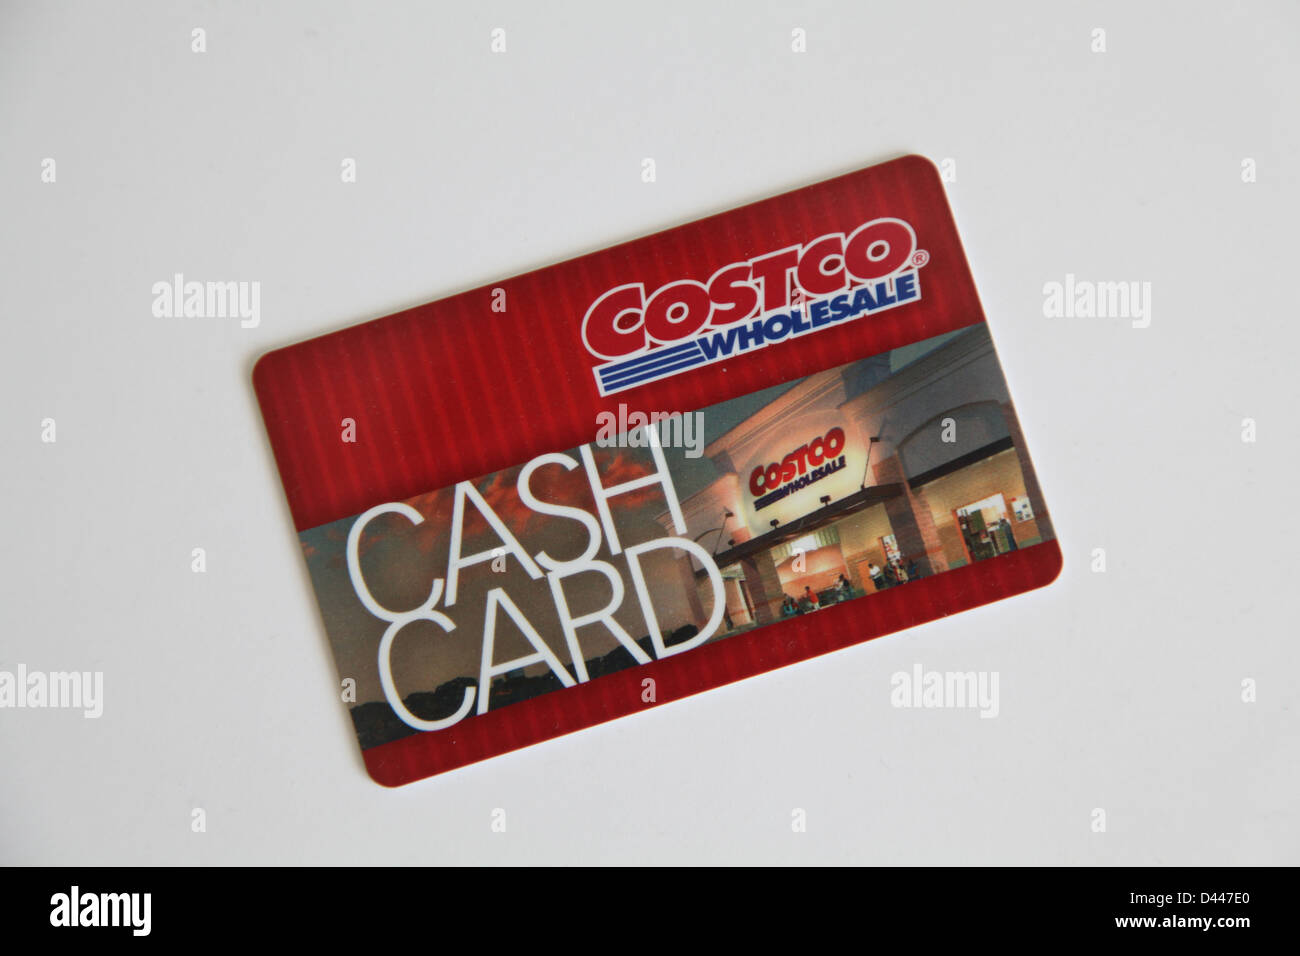 costco cash card Stock Photo